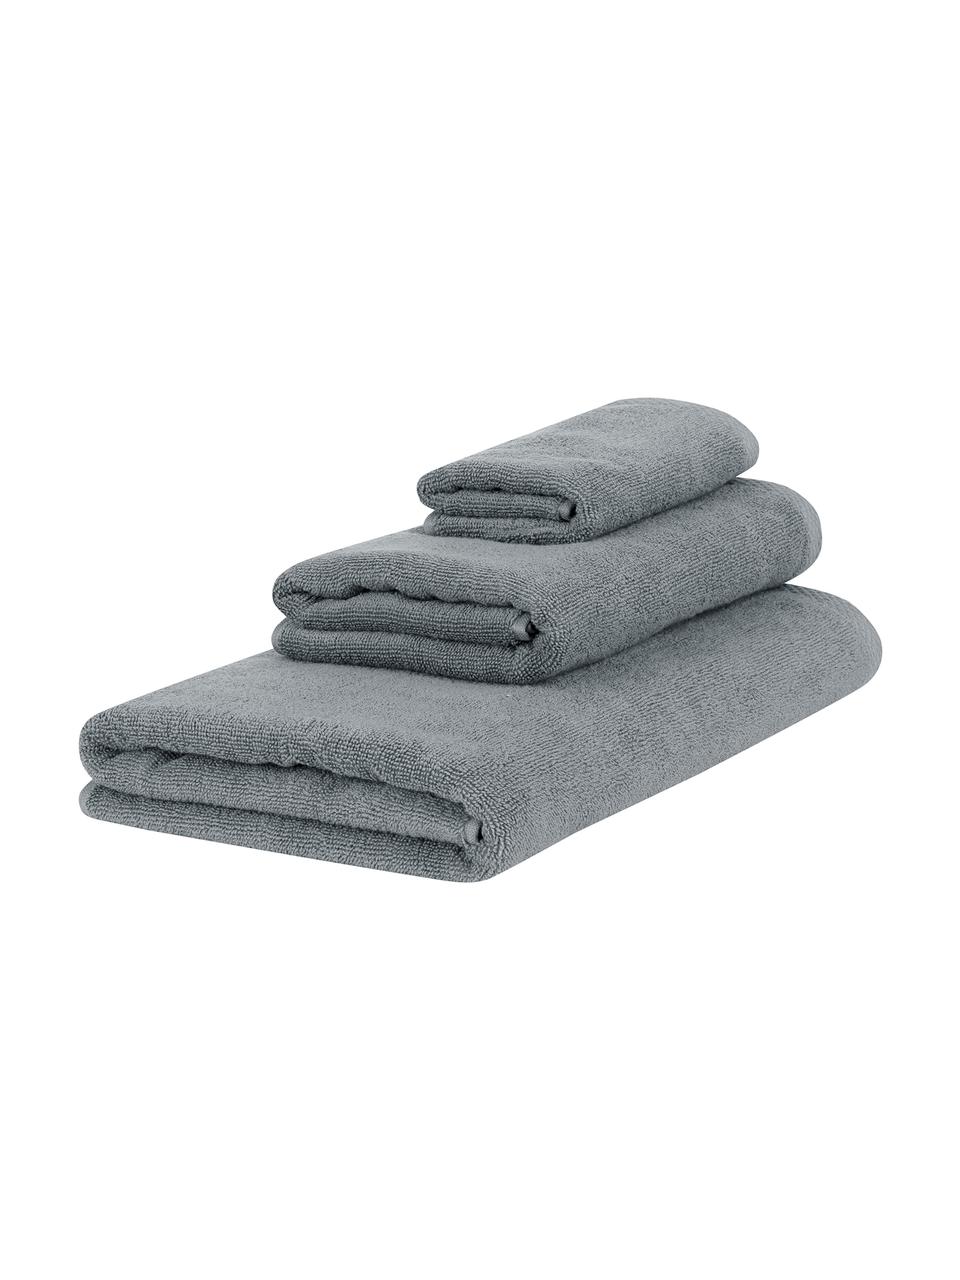 Komplet ręczników Comfort, 3 elem., Ciemny szary, Komplet z różnymi rozmiarami